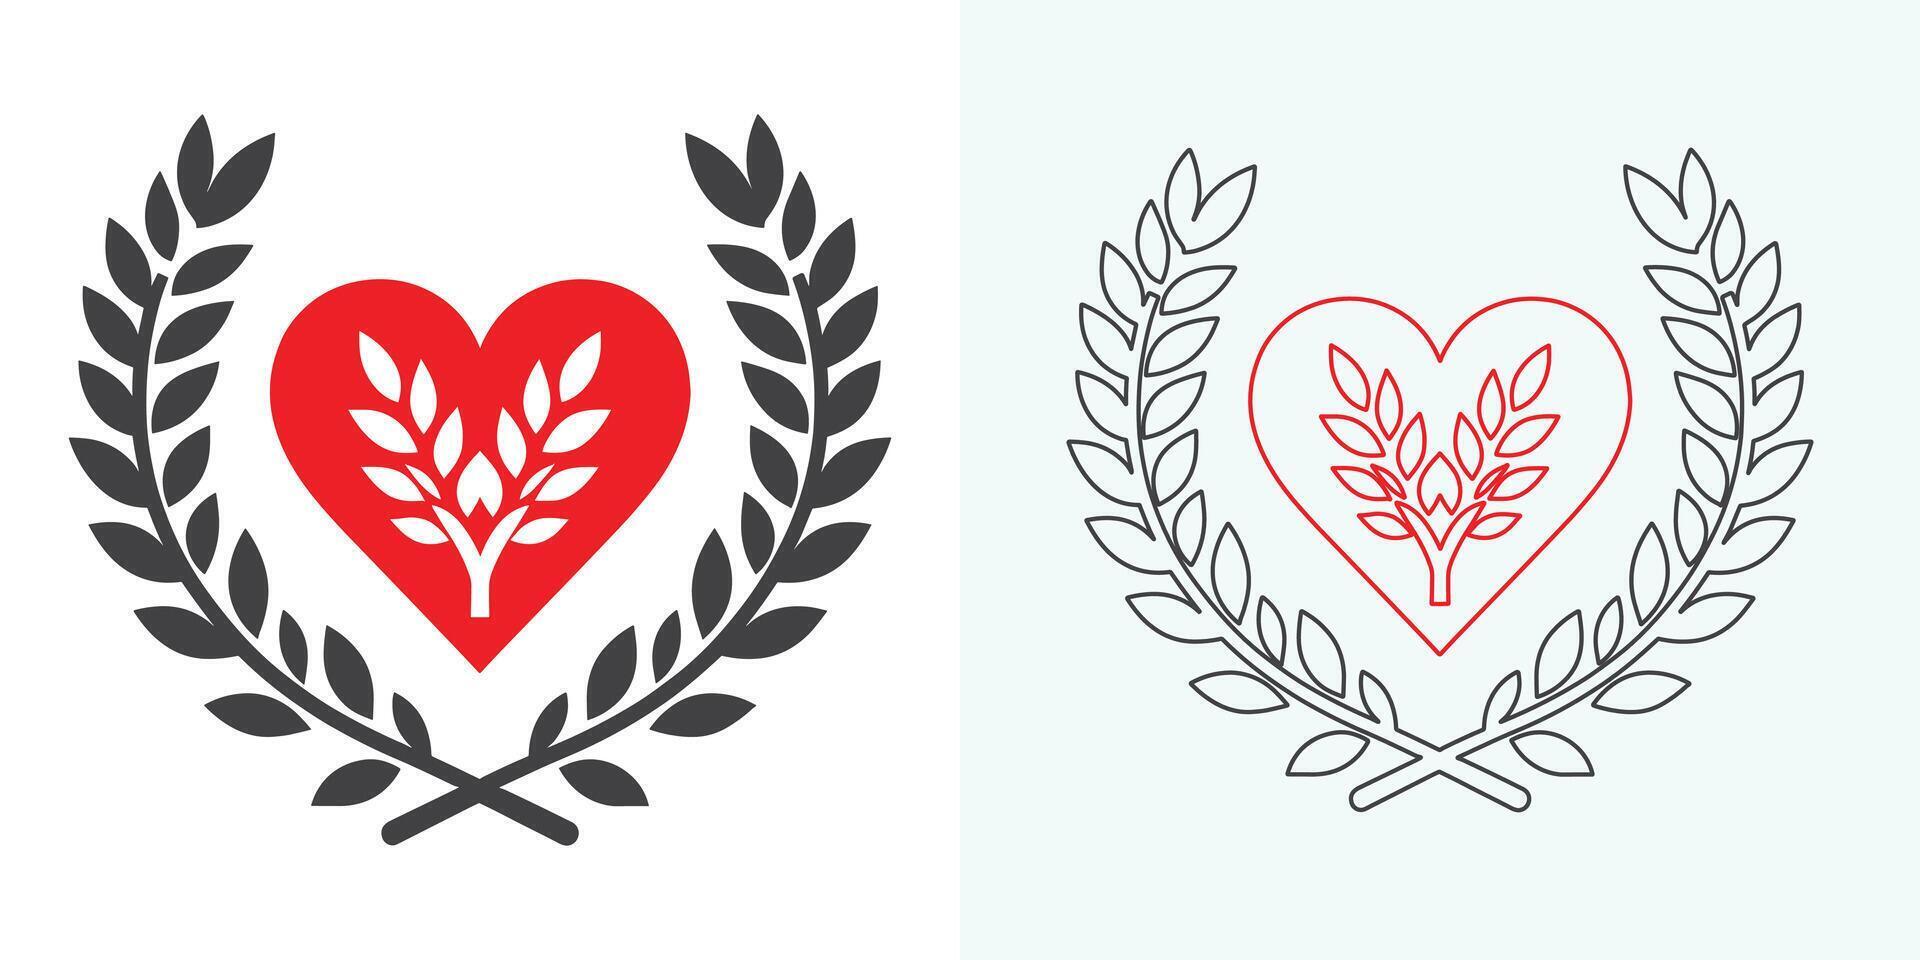 liefde hart symbool pictogrammen . liefde illustratie reeks met solide en schets vector harten